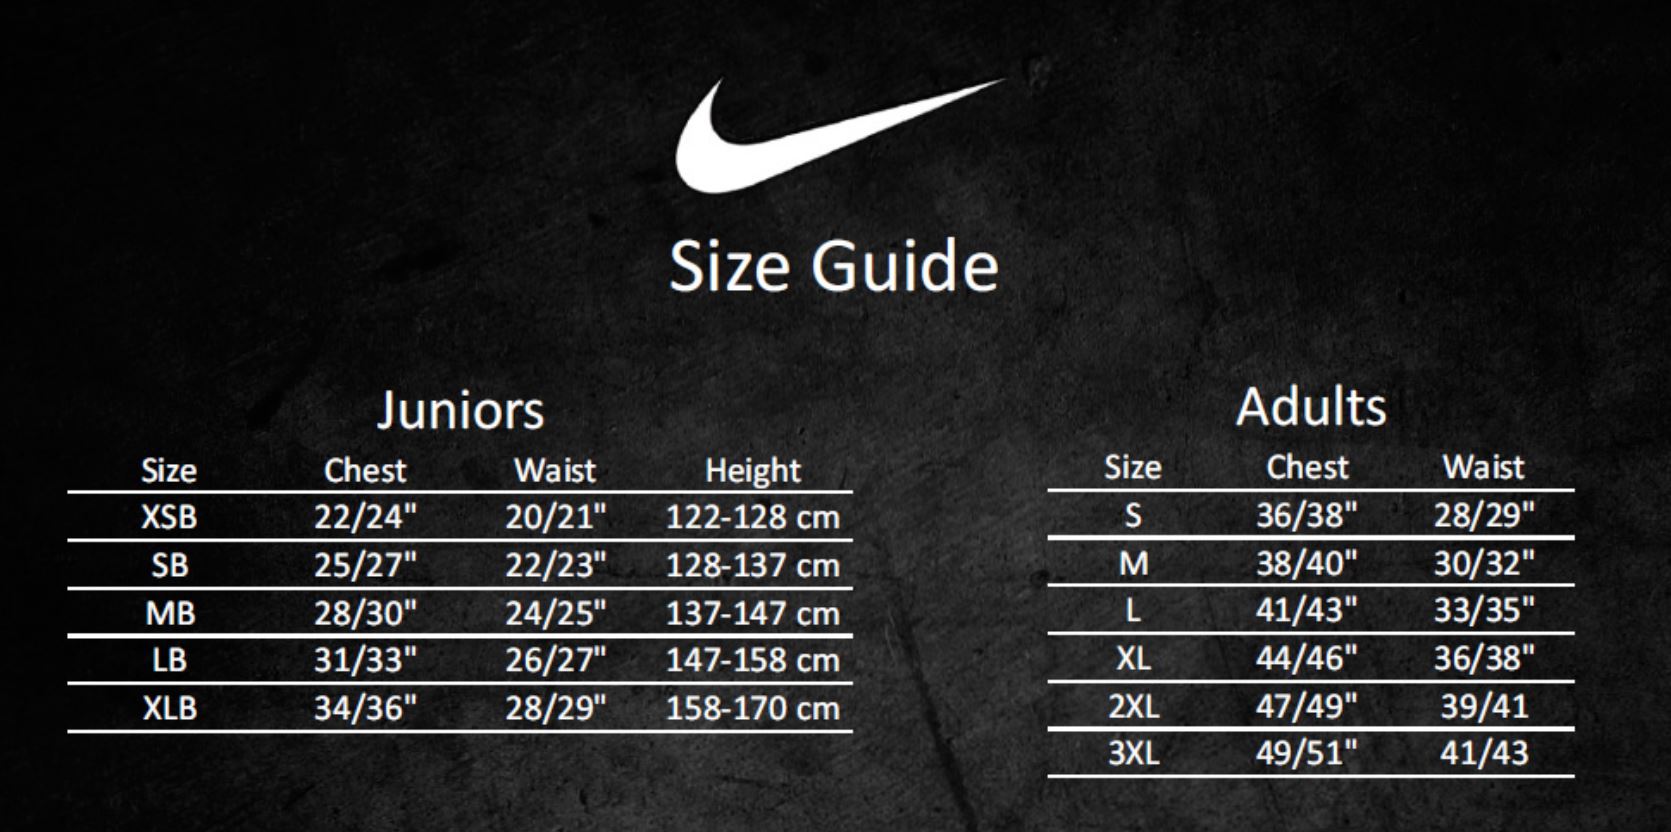 Размеры бутс найк. Размерная сетка найк мужская. Размерная сетка us Nike. Размерная сетка Nike мужская кроссовки. Кроссовки найк размер 8.